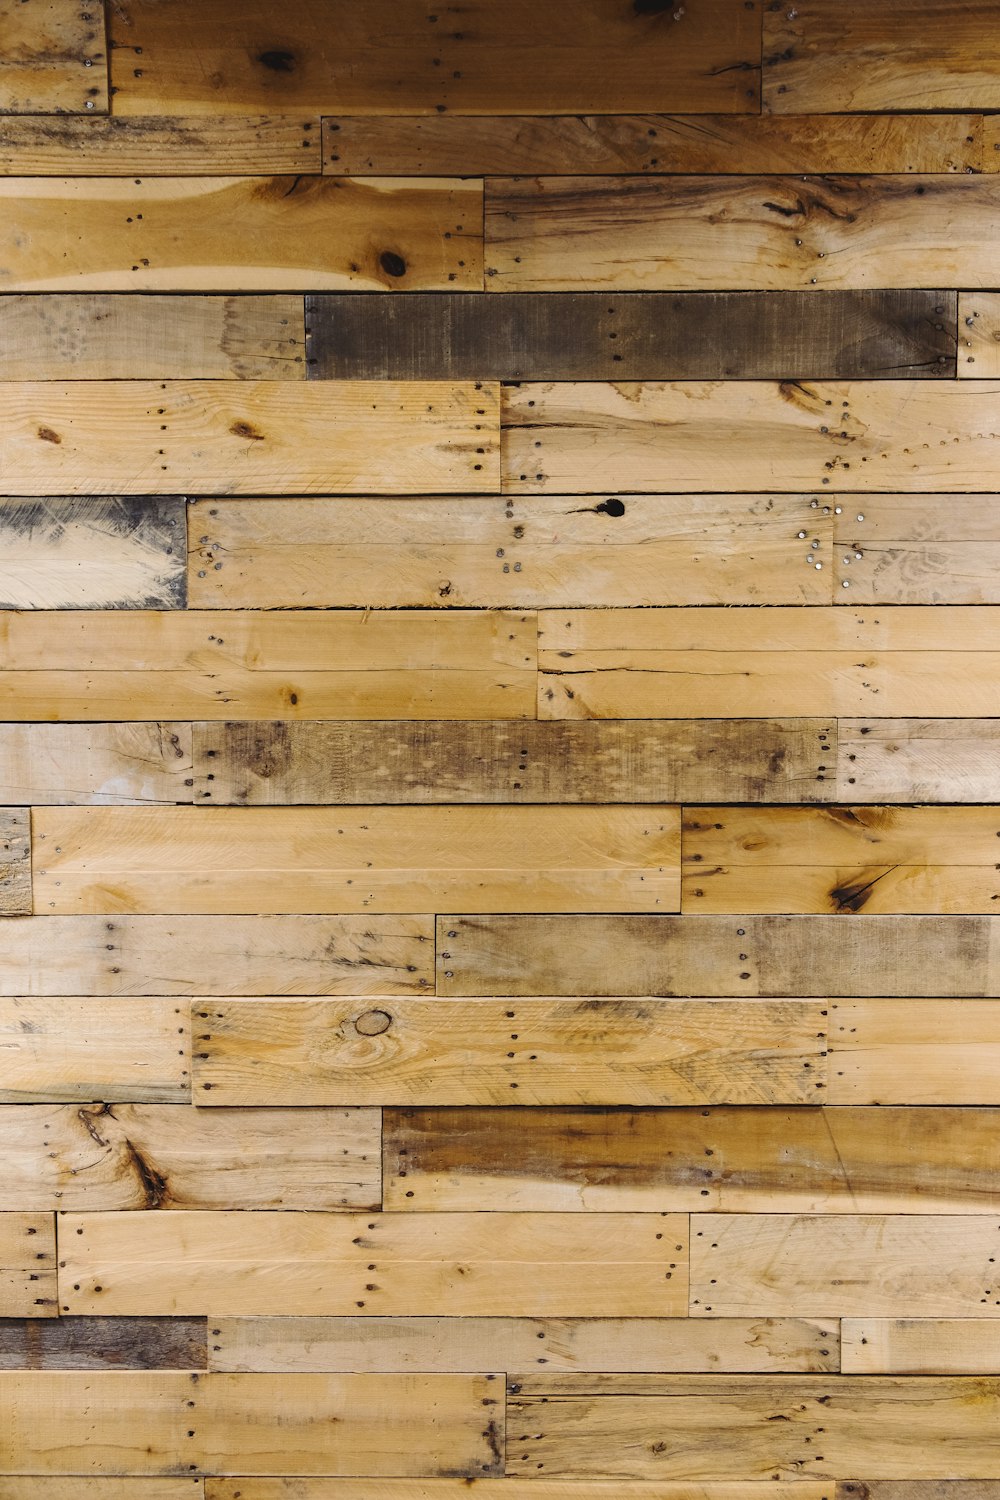 Tường pallet gỗ – một xu hướng thiết kế nội thất đang được ưa chuộng. Hãy chiêm ngưỡng những hình ảnh tường pallet gỗ cực kỳ phong cách và độc đáo, bạn sẽ hiểu tại sao nó luôn được yêu thích như vậy.